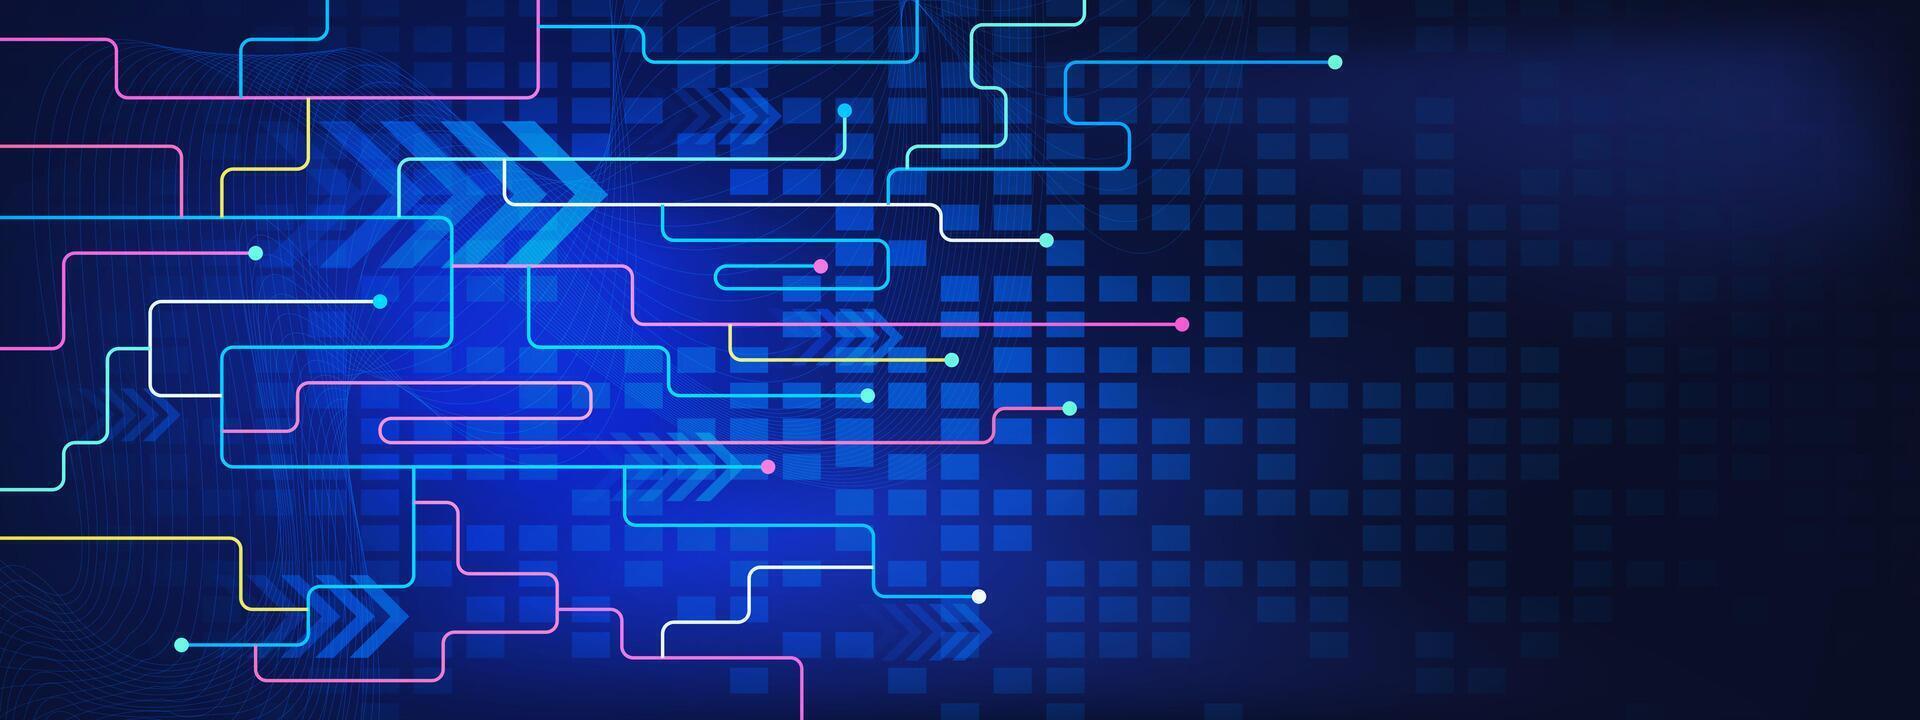 Mehrfarbig Linien und Punkte zum Netzwerk Verbindung, Sozial Vernetzung und global Kommunikation Technologie auf dunkel Blau Hintergrund. Vektor Illustration.